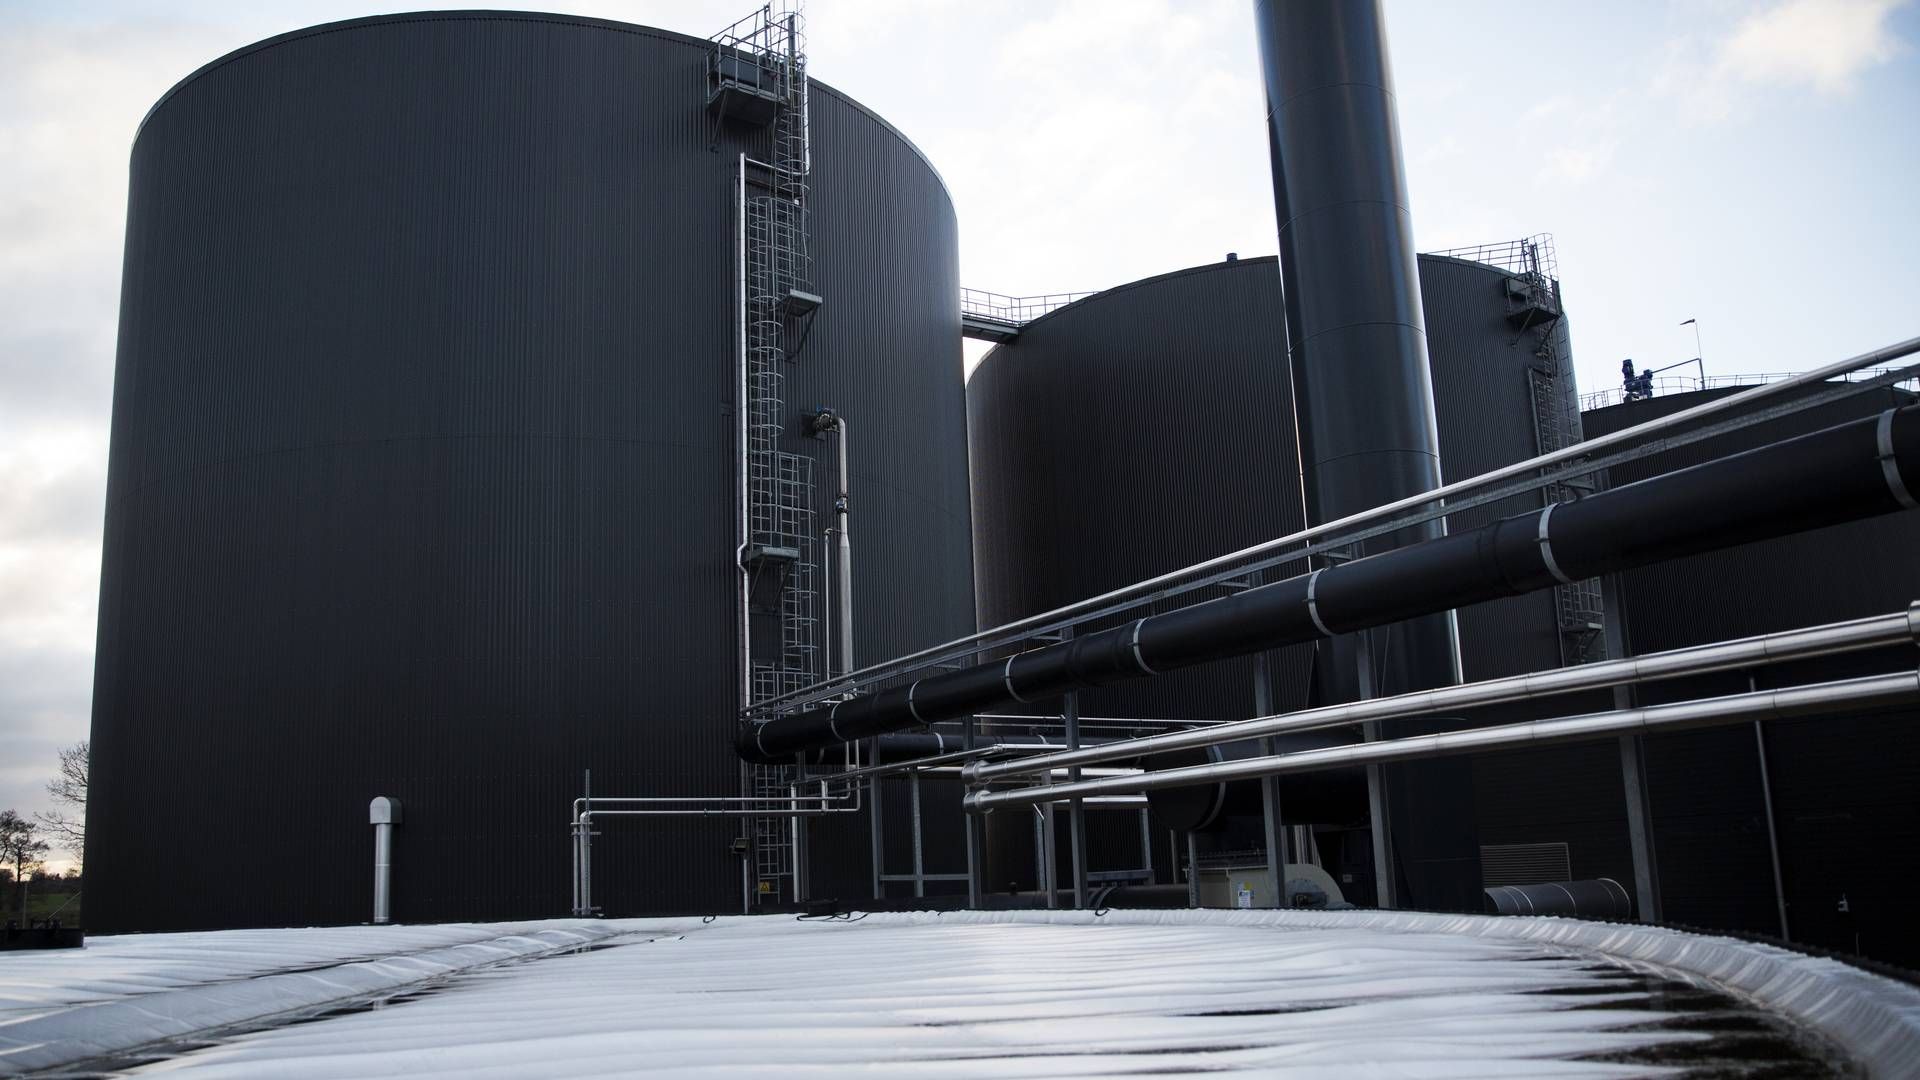 Her ses et biogasanlæg ejet af Nature Energy, landets største biogasproducent, på Midtfyn. | Foto: Louise Herrche Serup